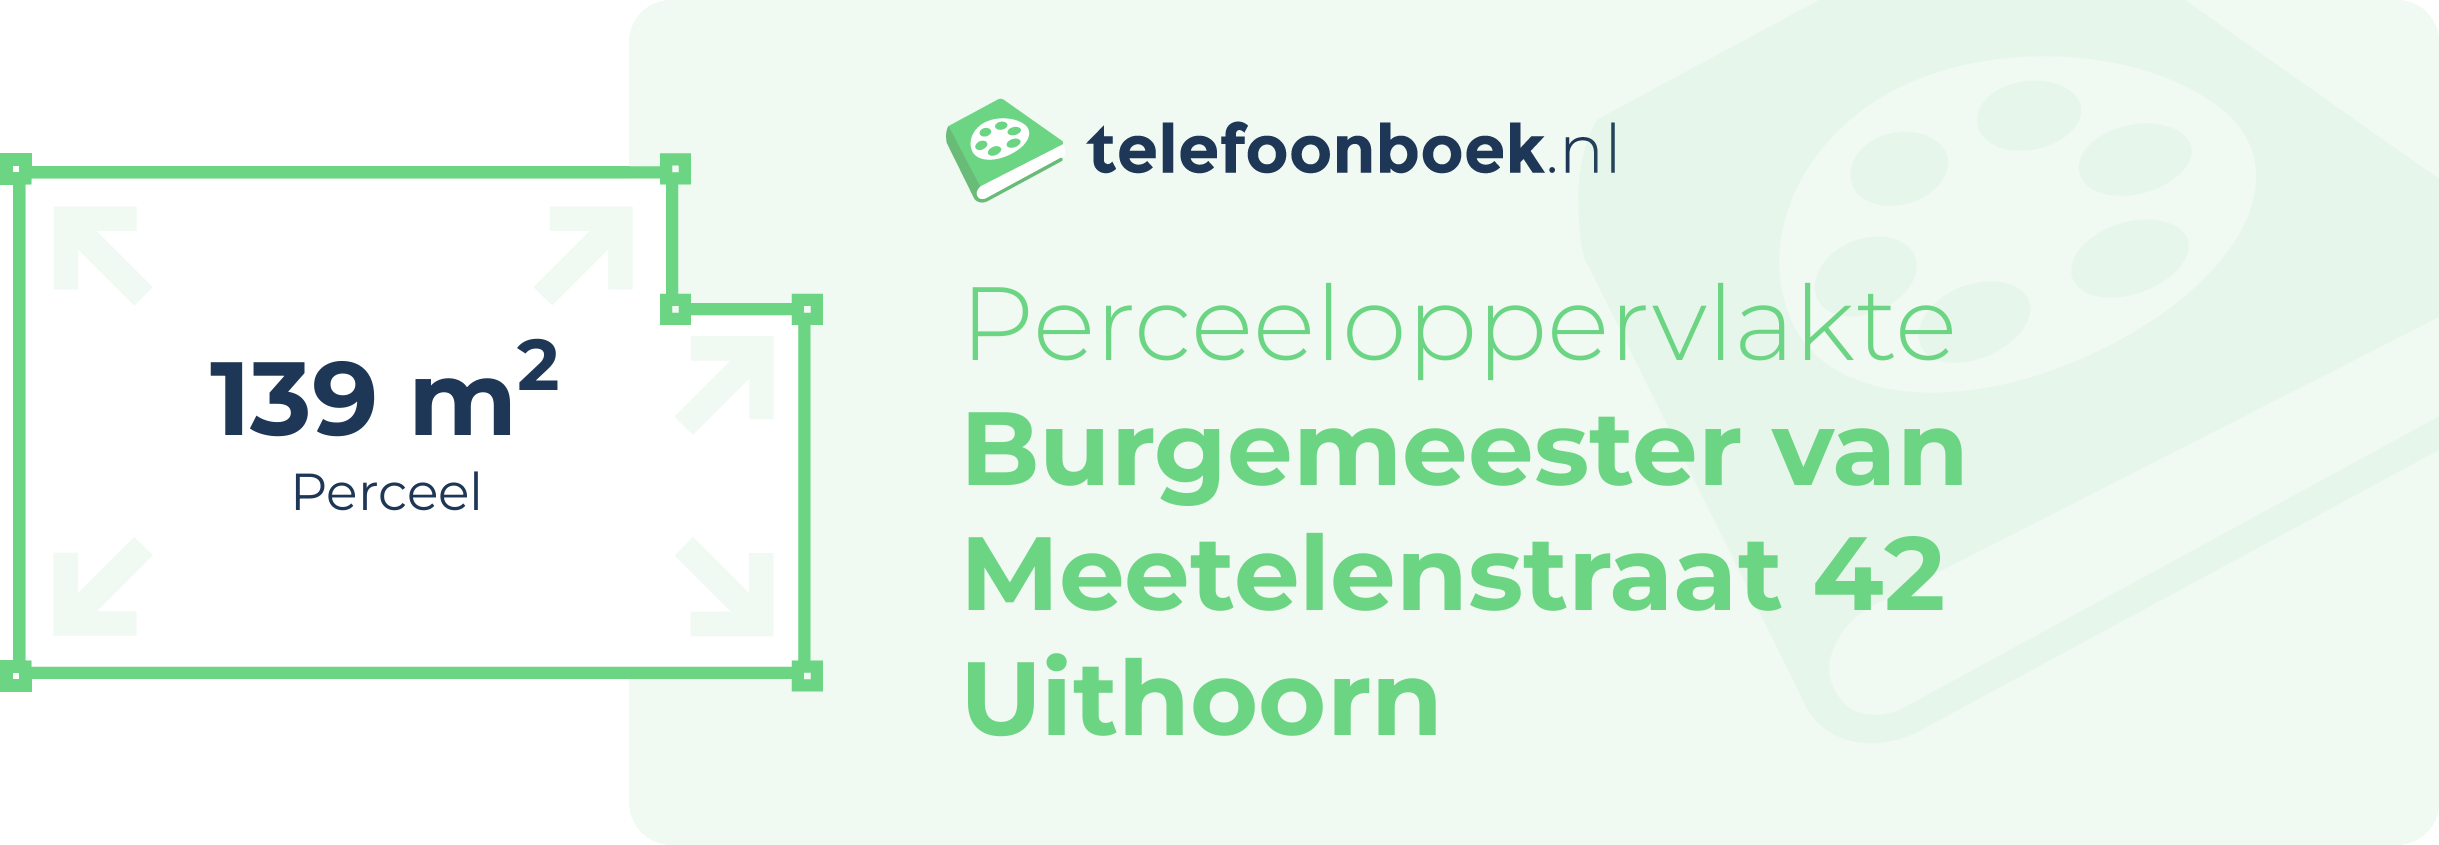 Perceeloppervlakte Burgemeester Van Meetelenstraat 42 Uithoorn